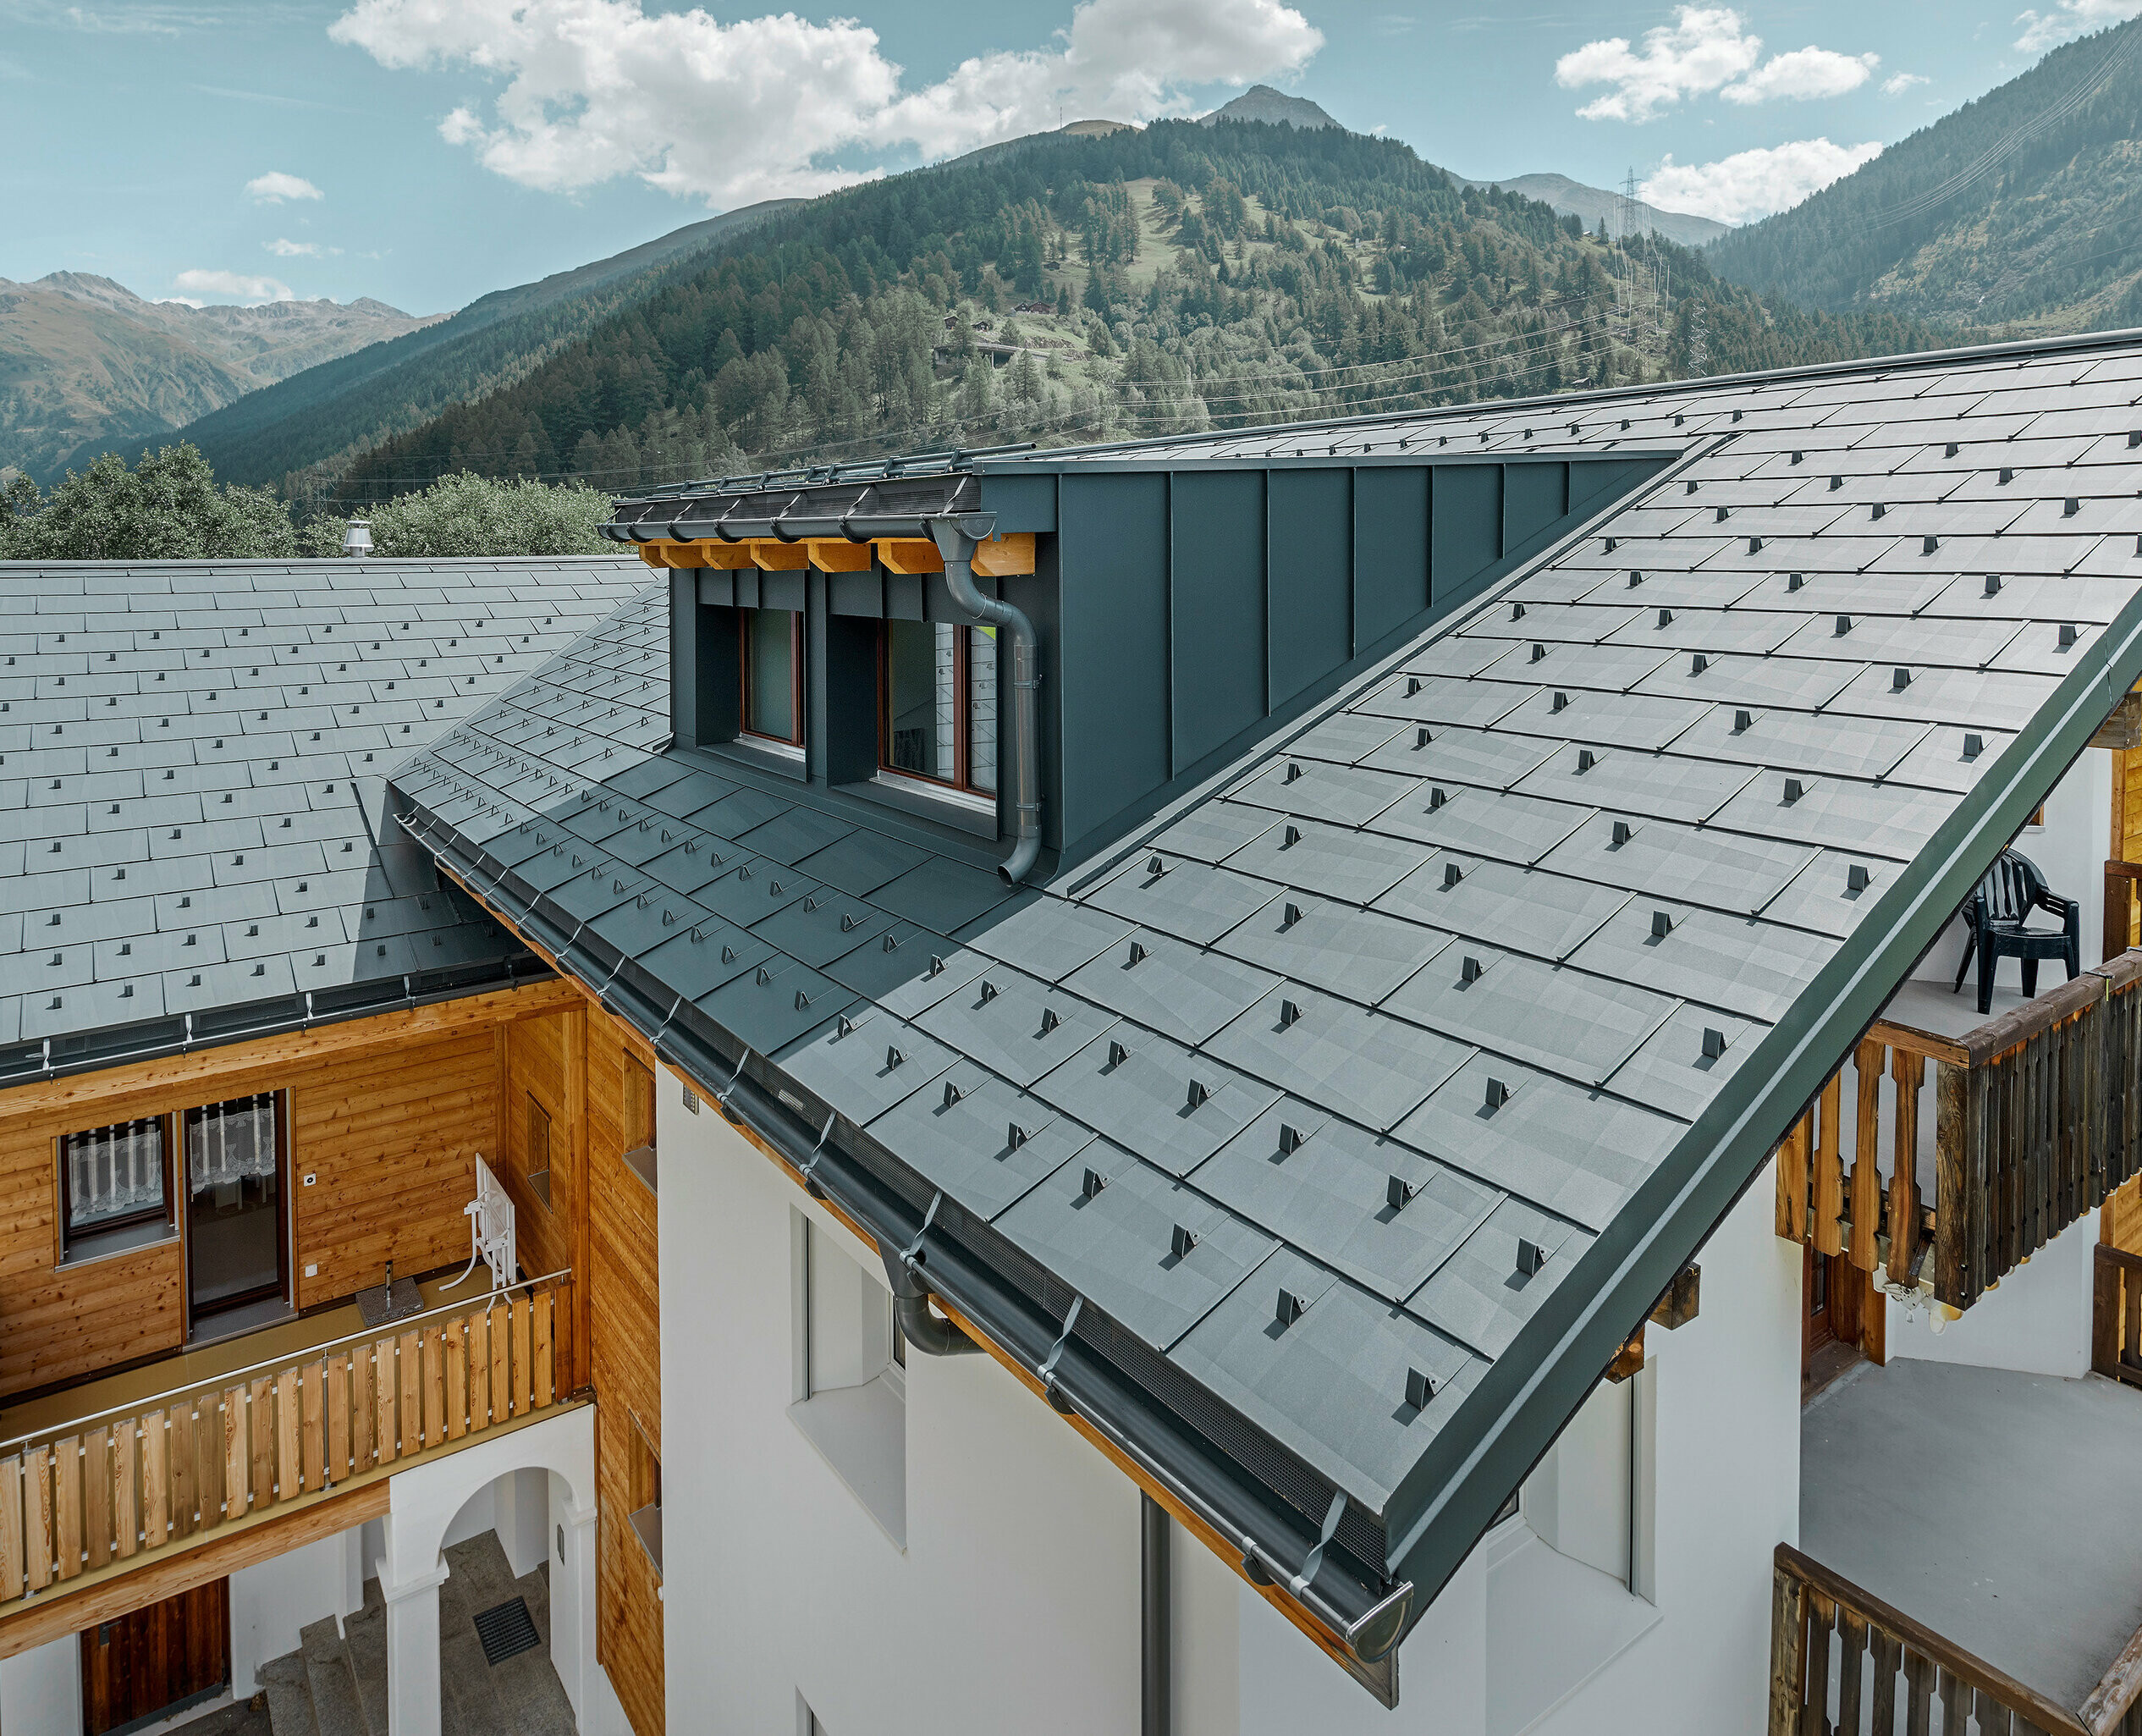 Bytový dom s vikierom a sedlovou strechou, pokrytý strešným panelom PREFA FX.12 v antracitovej farbe; v pozadí vidieť hory.